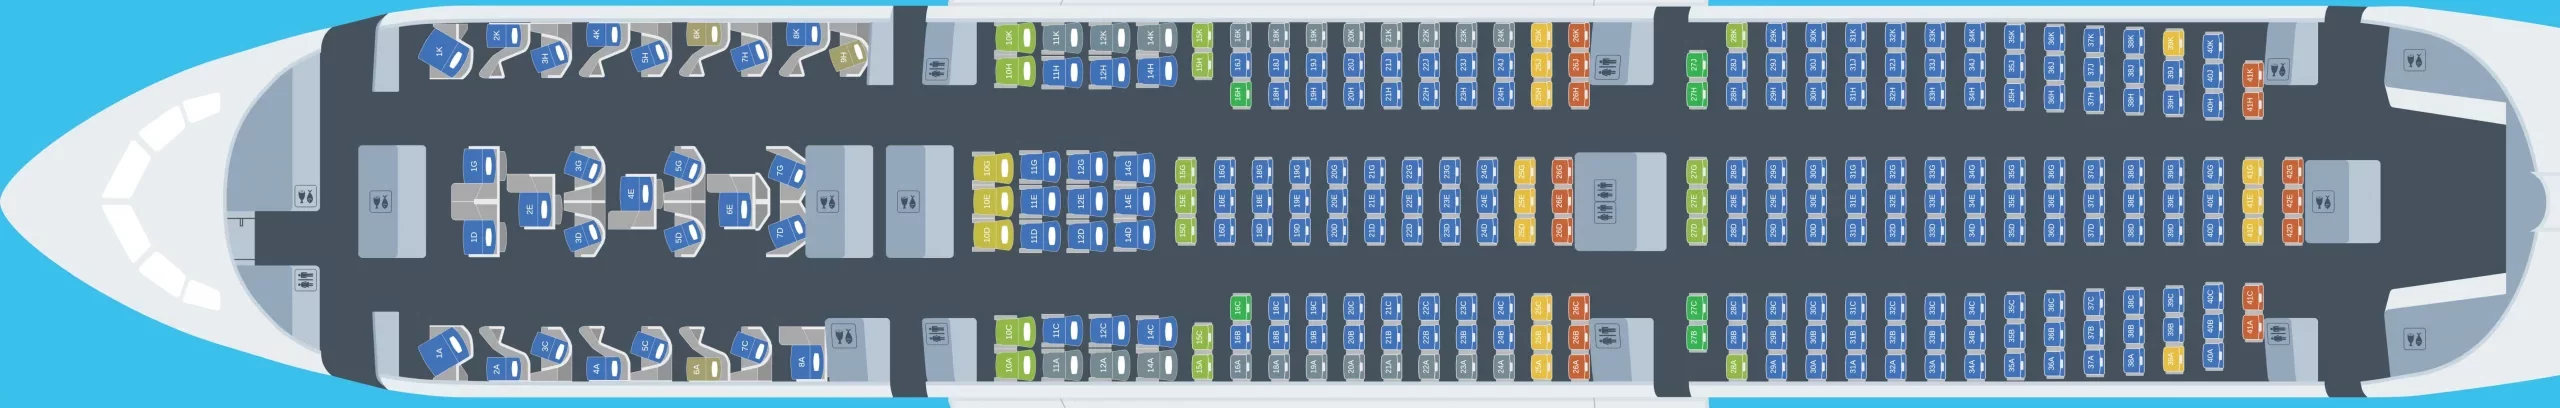 Lufthansa 787 (787-9) Seating Plan